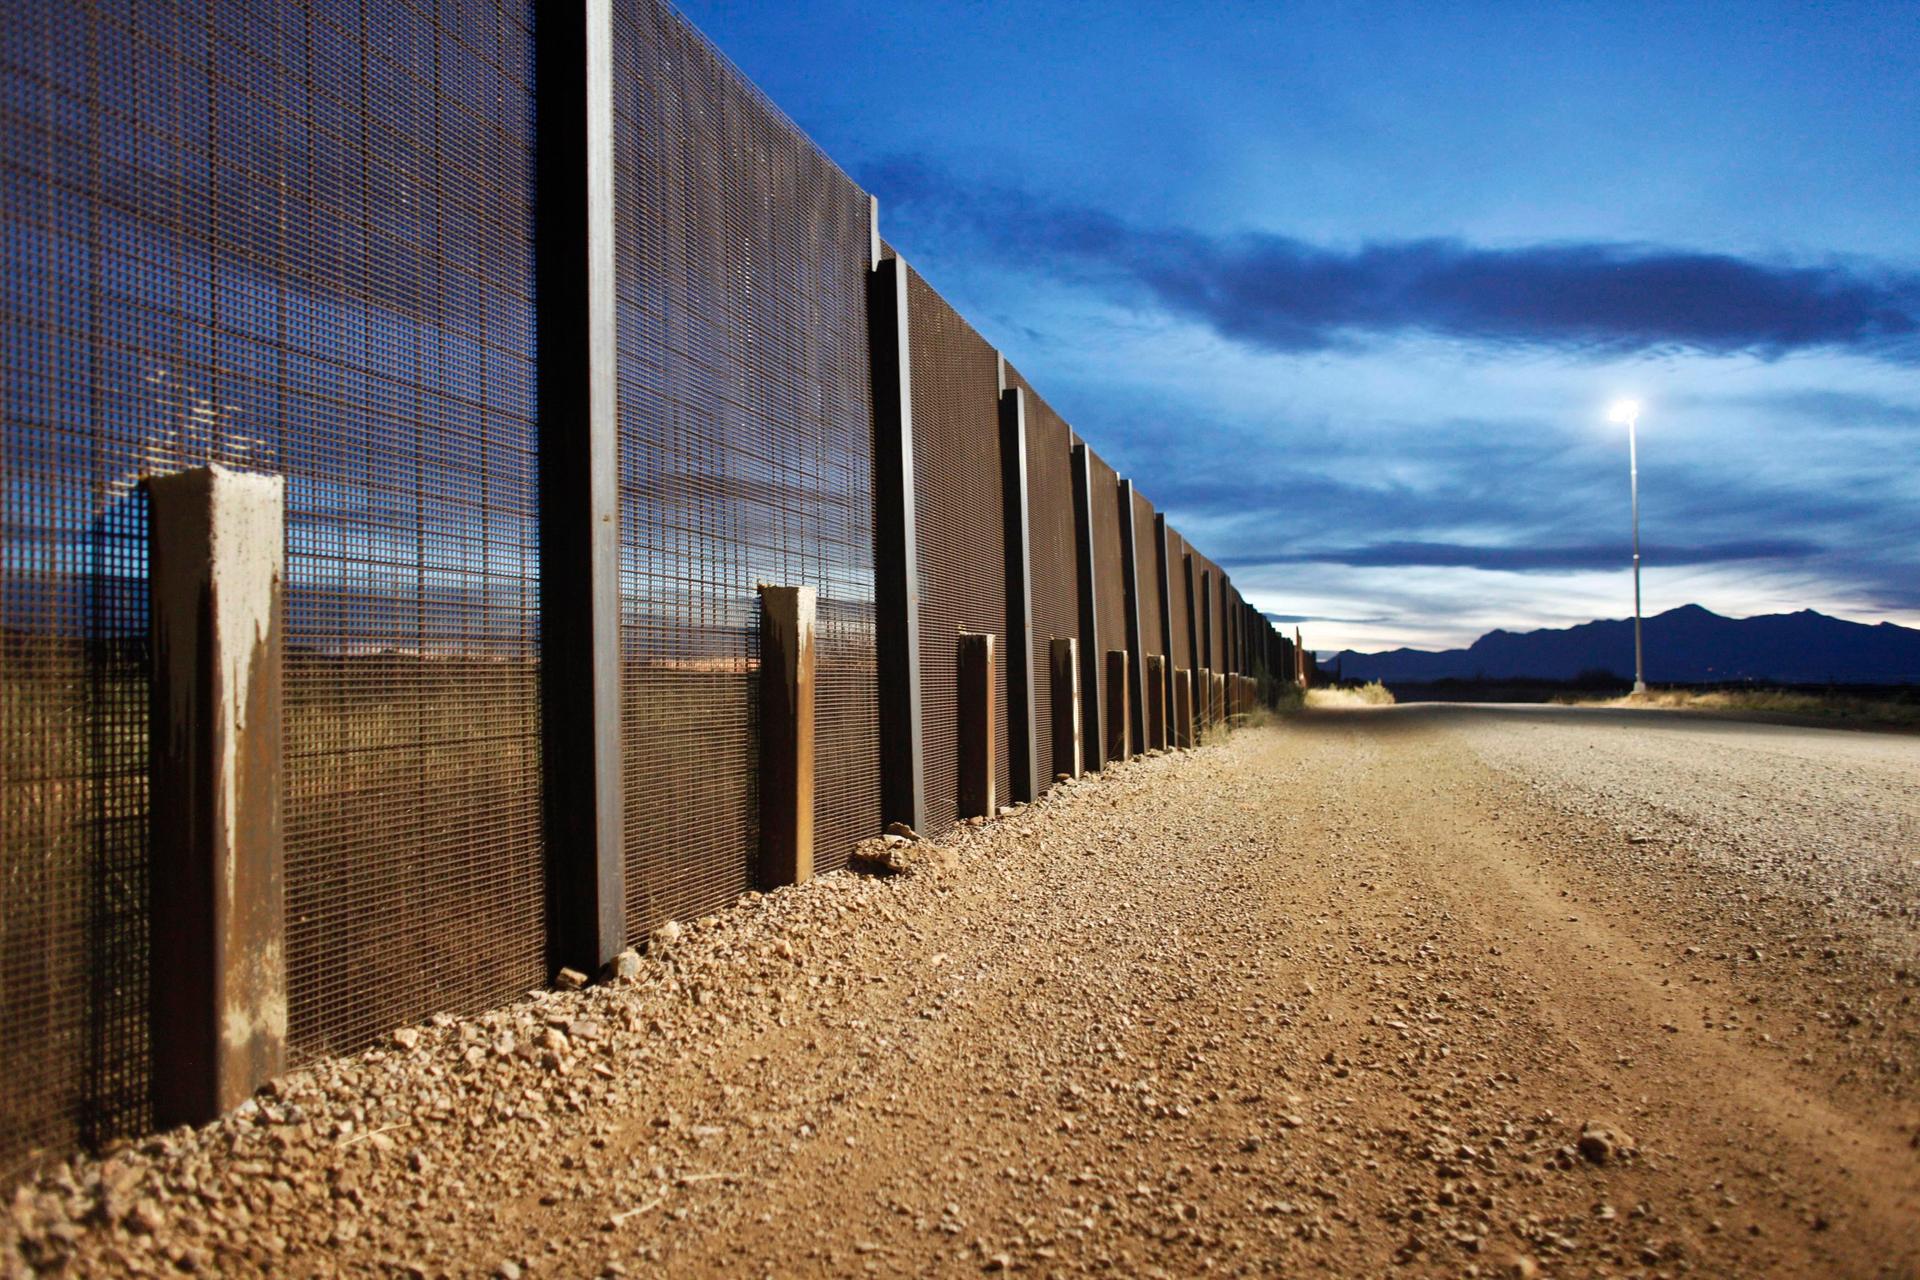 The US-Mexico border fence near Naco, Arizona.